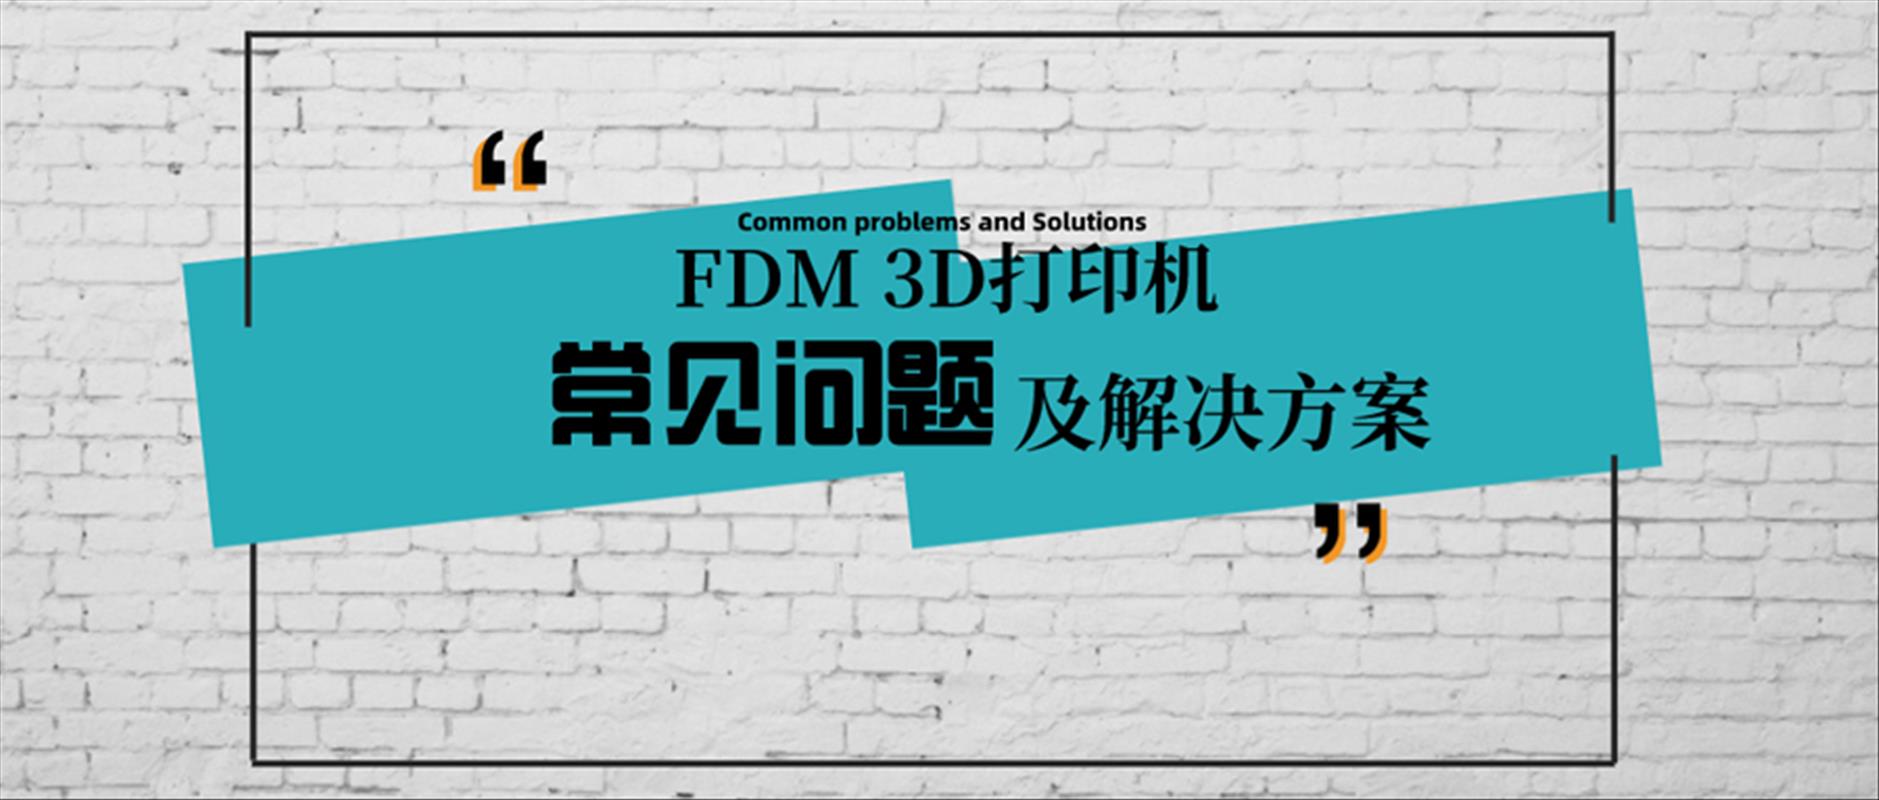 3d打印|了解桌面级FDM 3D打印机常见问题及解答